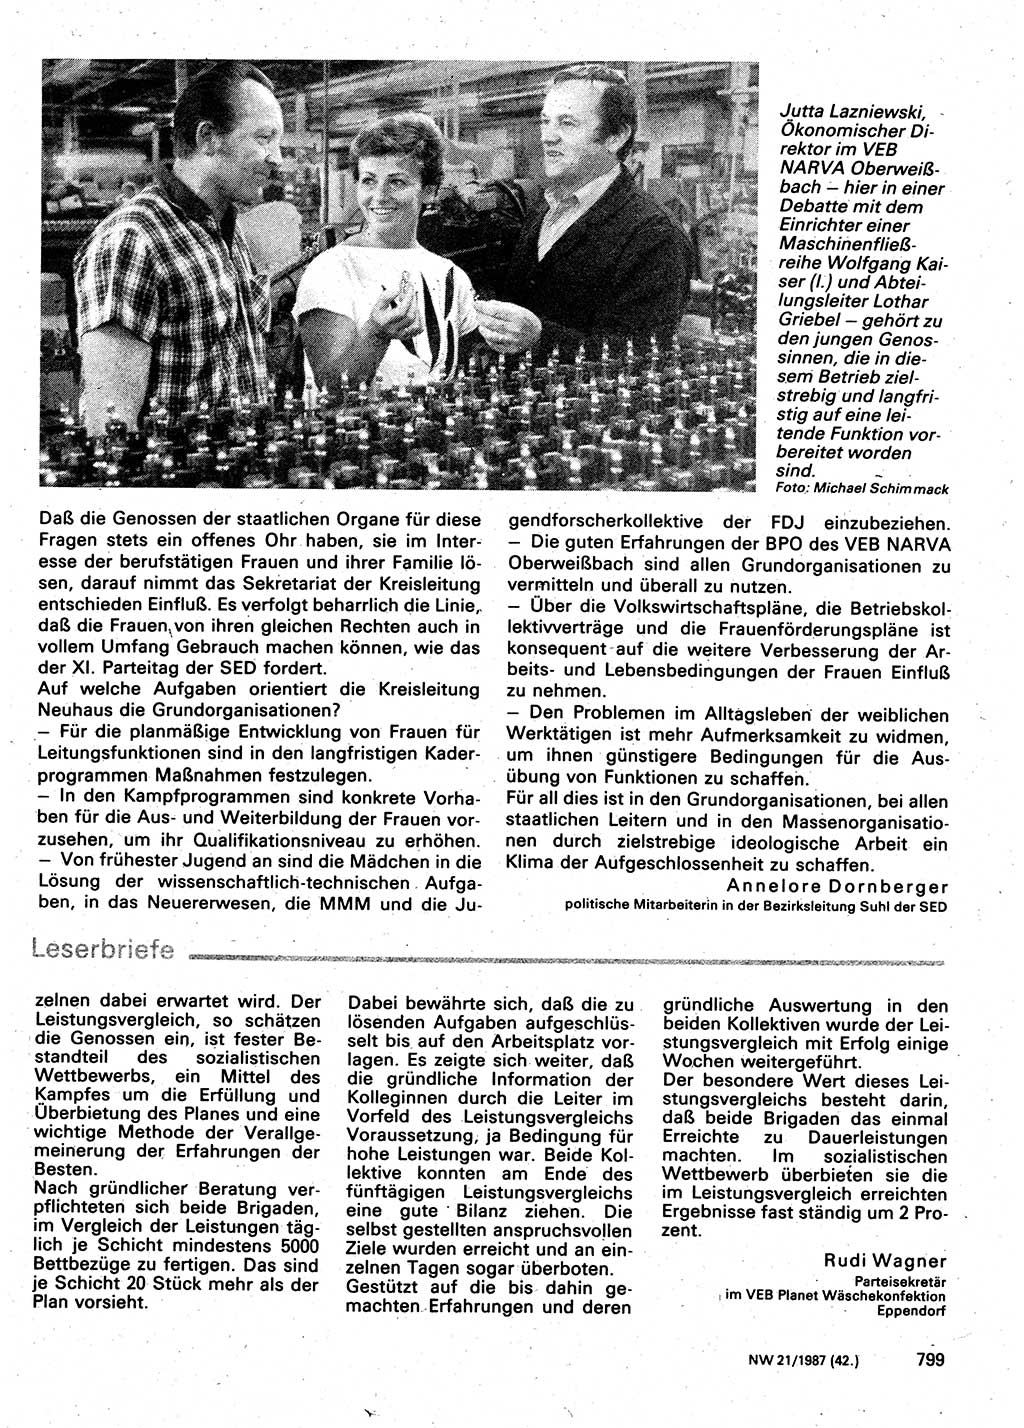 Neuer Weg (NW), Organ des Zentralkomitees (ZK) der SED (Sozialistische Einheitspartei Deutschlands) für Fragen des Parteilebens, 42. Jahrgang [Deutsche Demokratische Republik (DDR)] 1987, Seite 799 (NW ZK SED DDR 1987, S. 799)